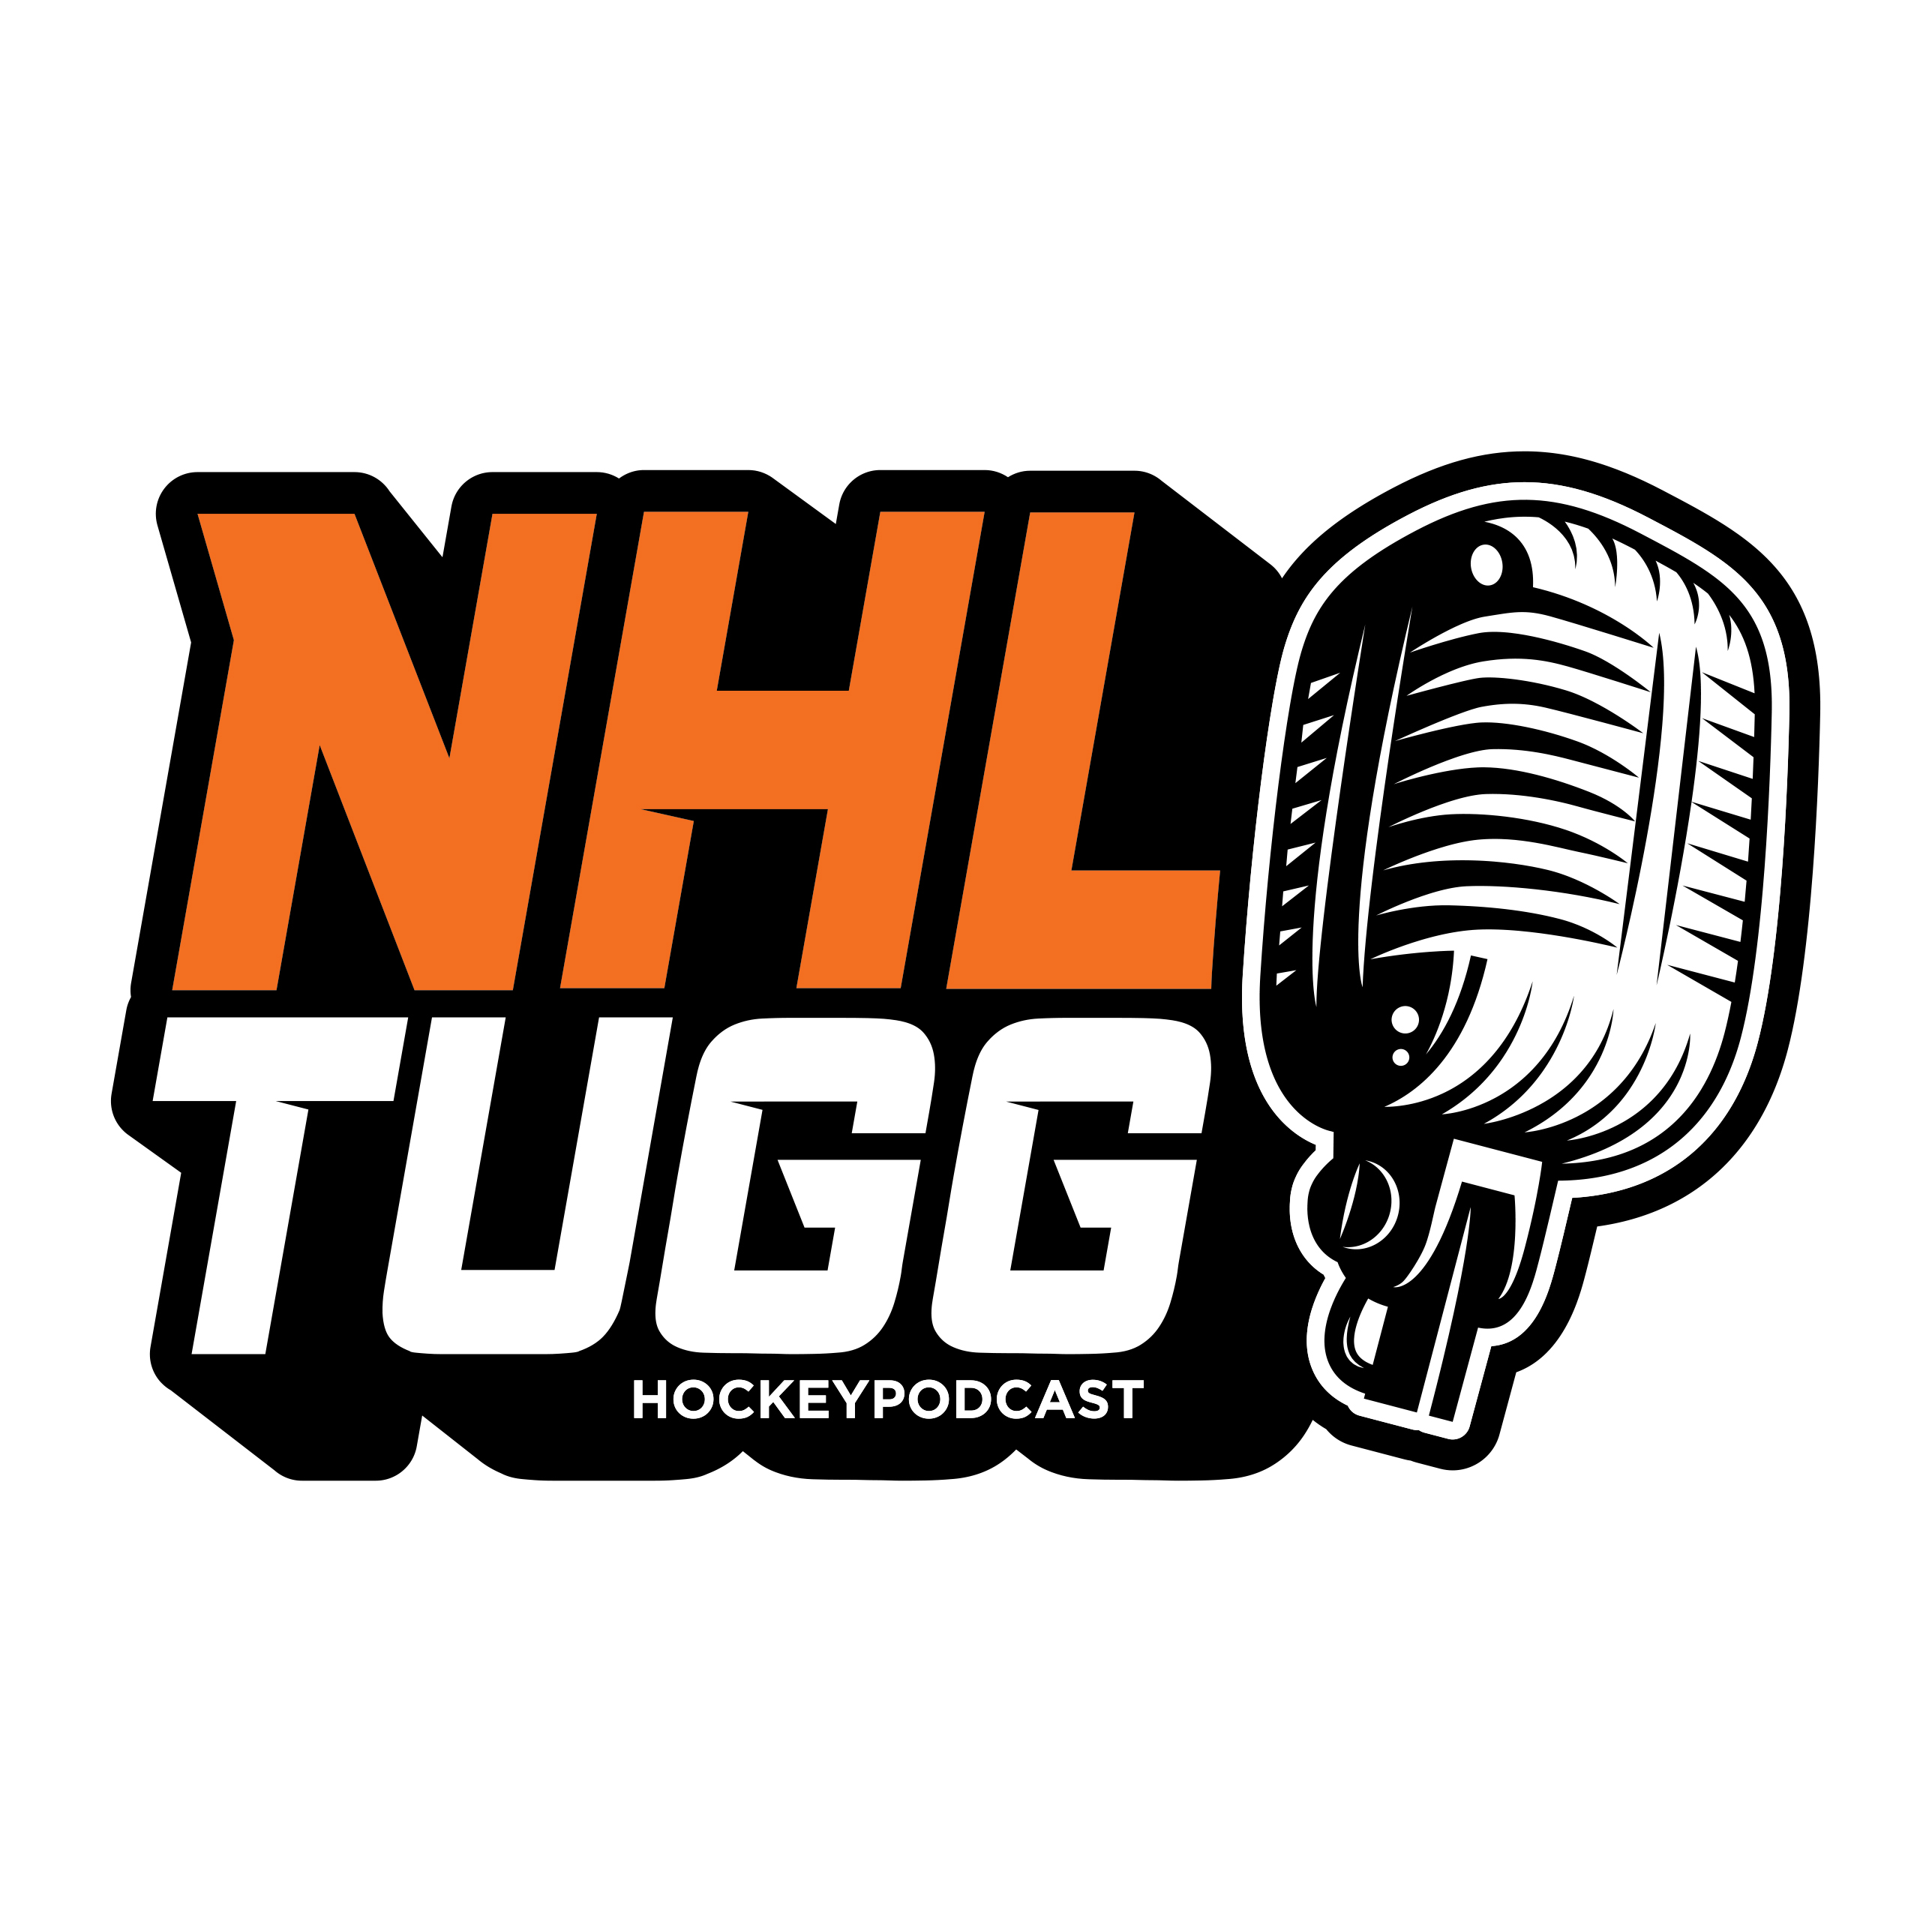 NHL-Tugg avsnitt 74 “Inför säsongen 19/20 - Central Division”